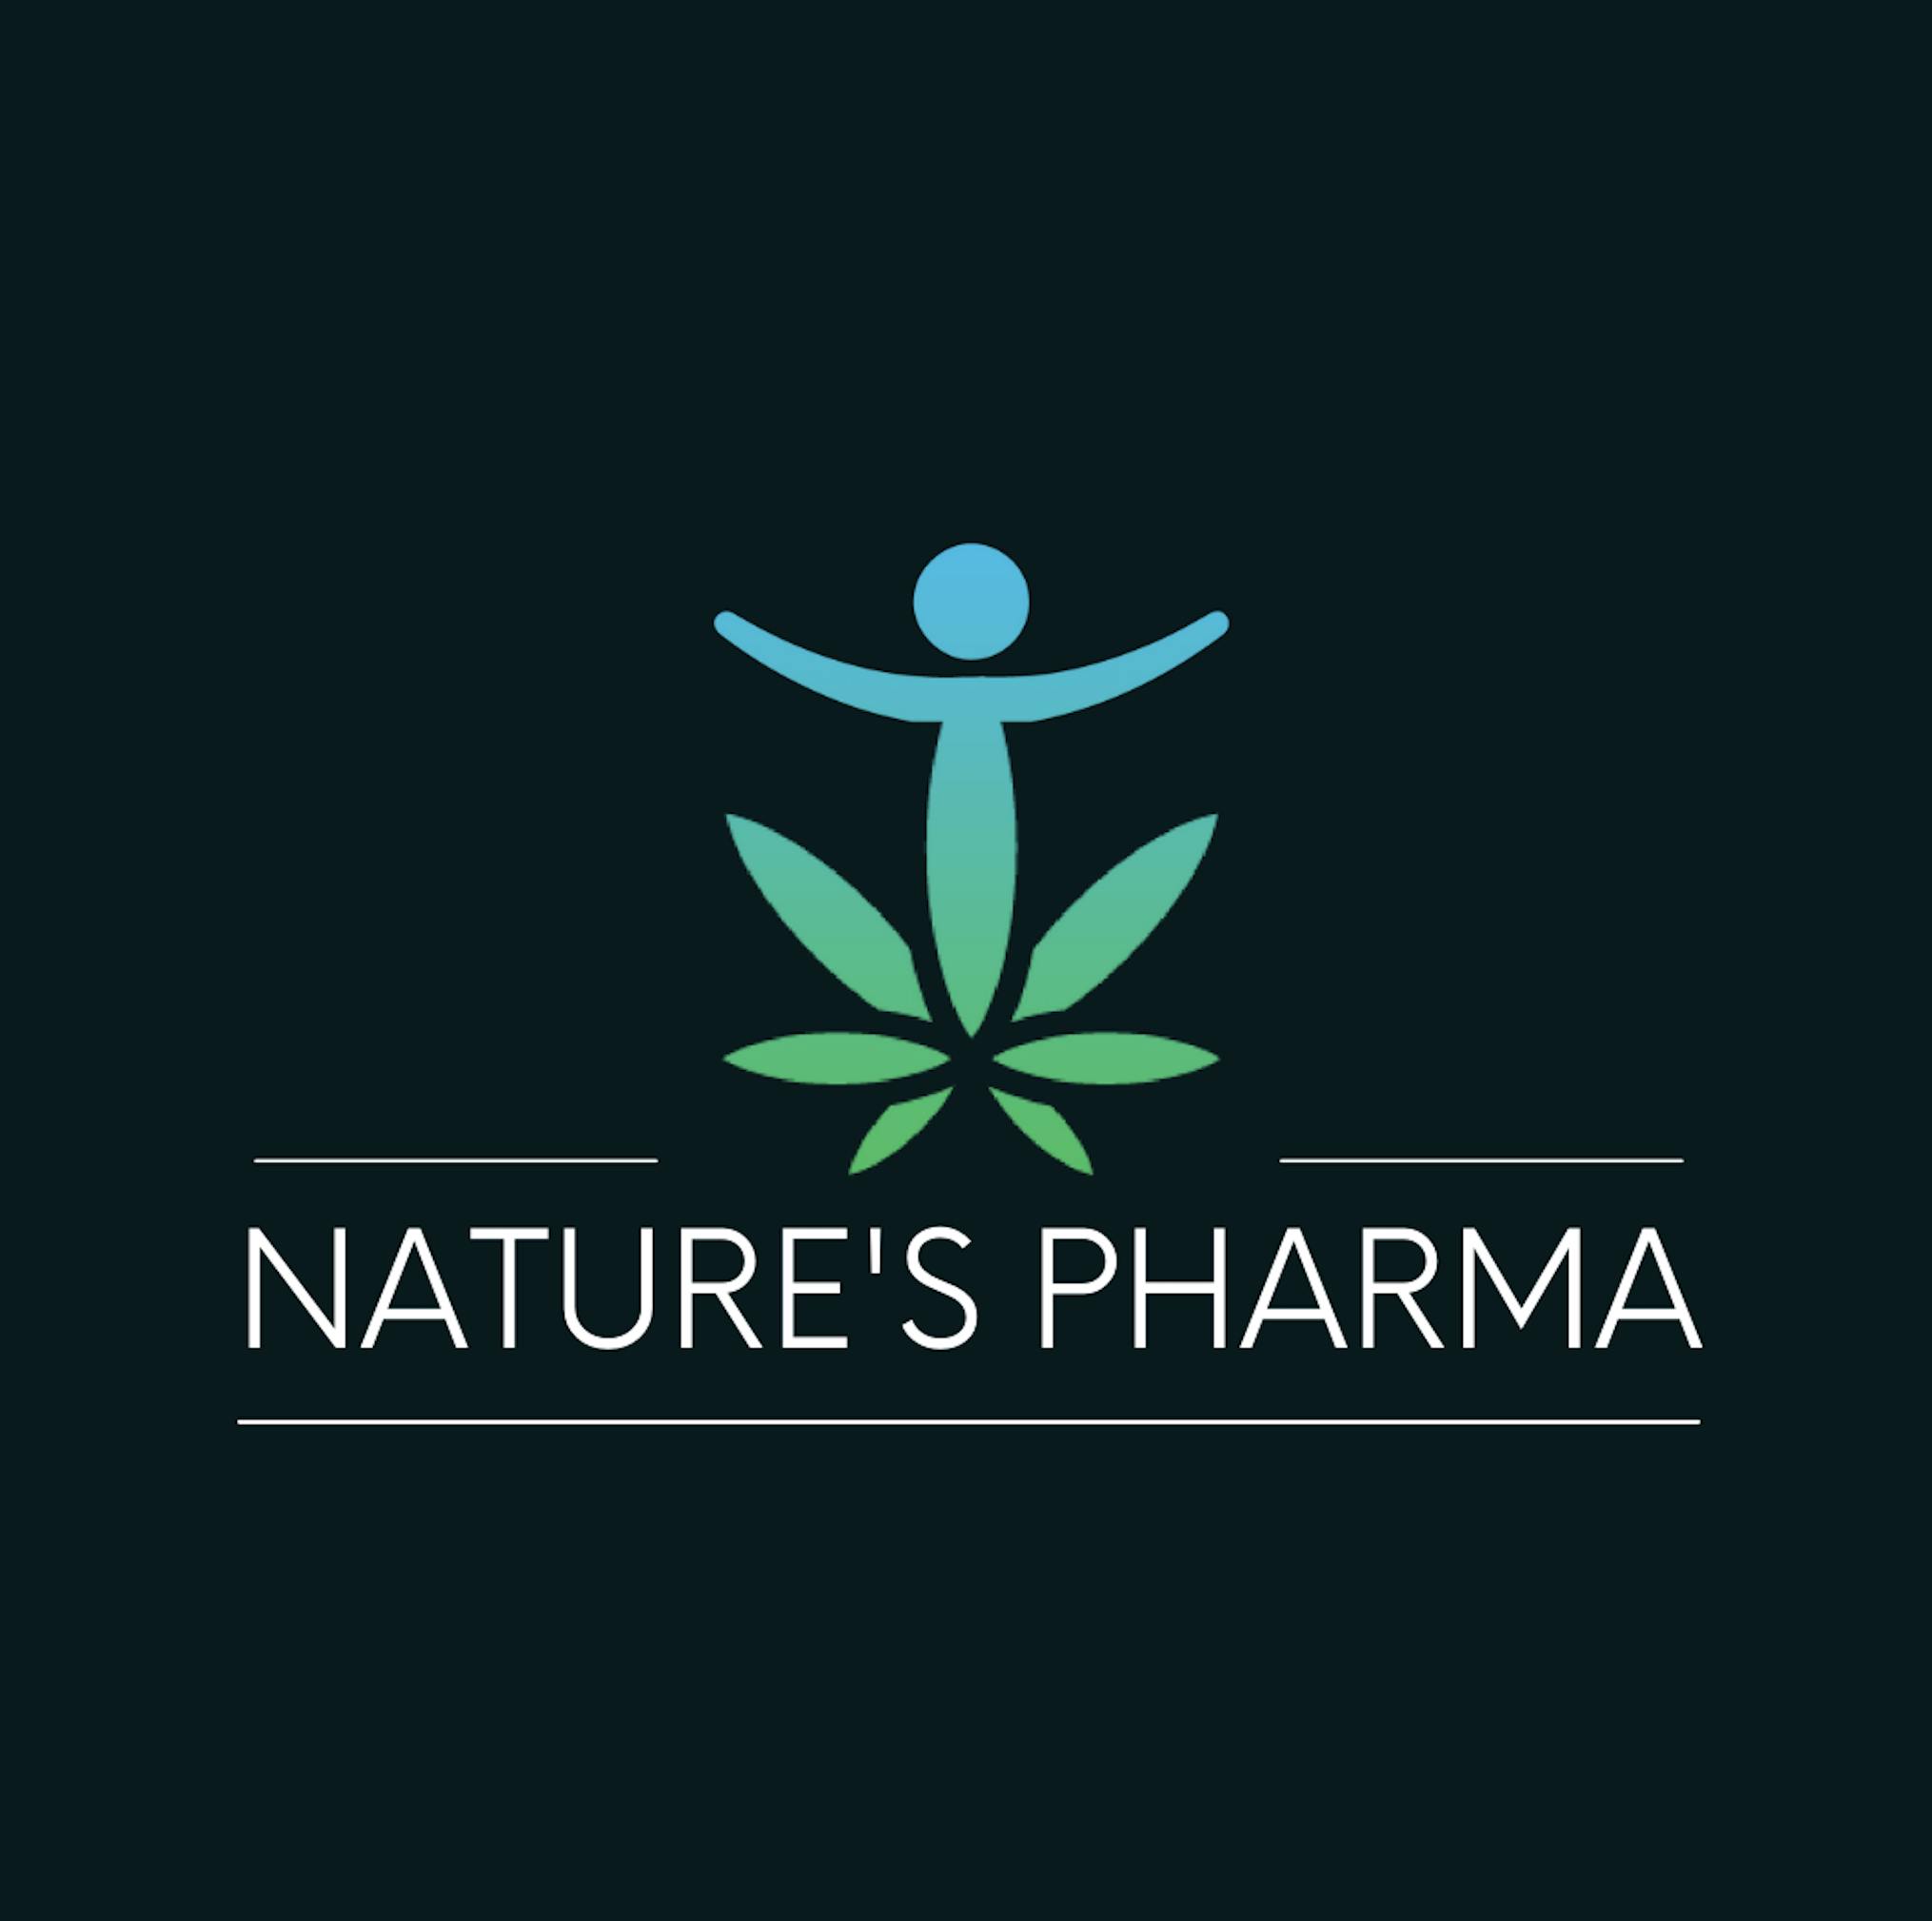 Nature's Pharma logo